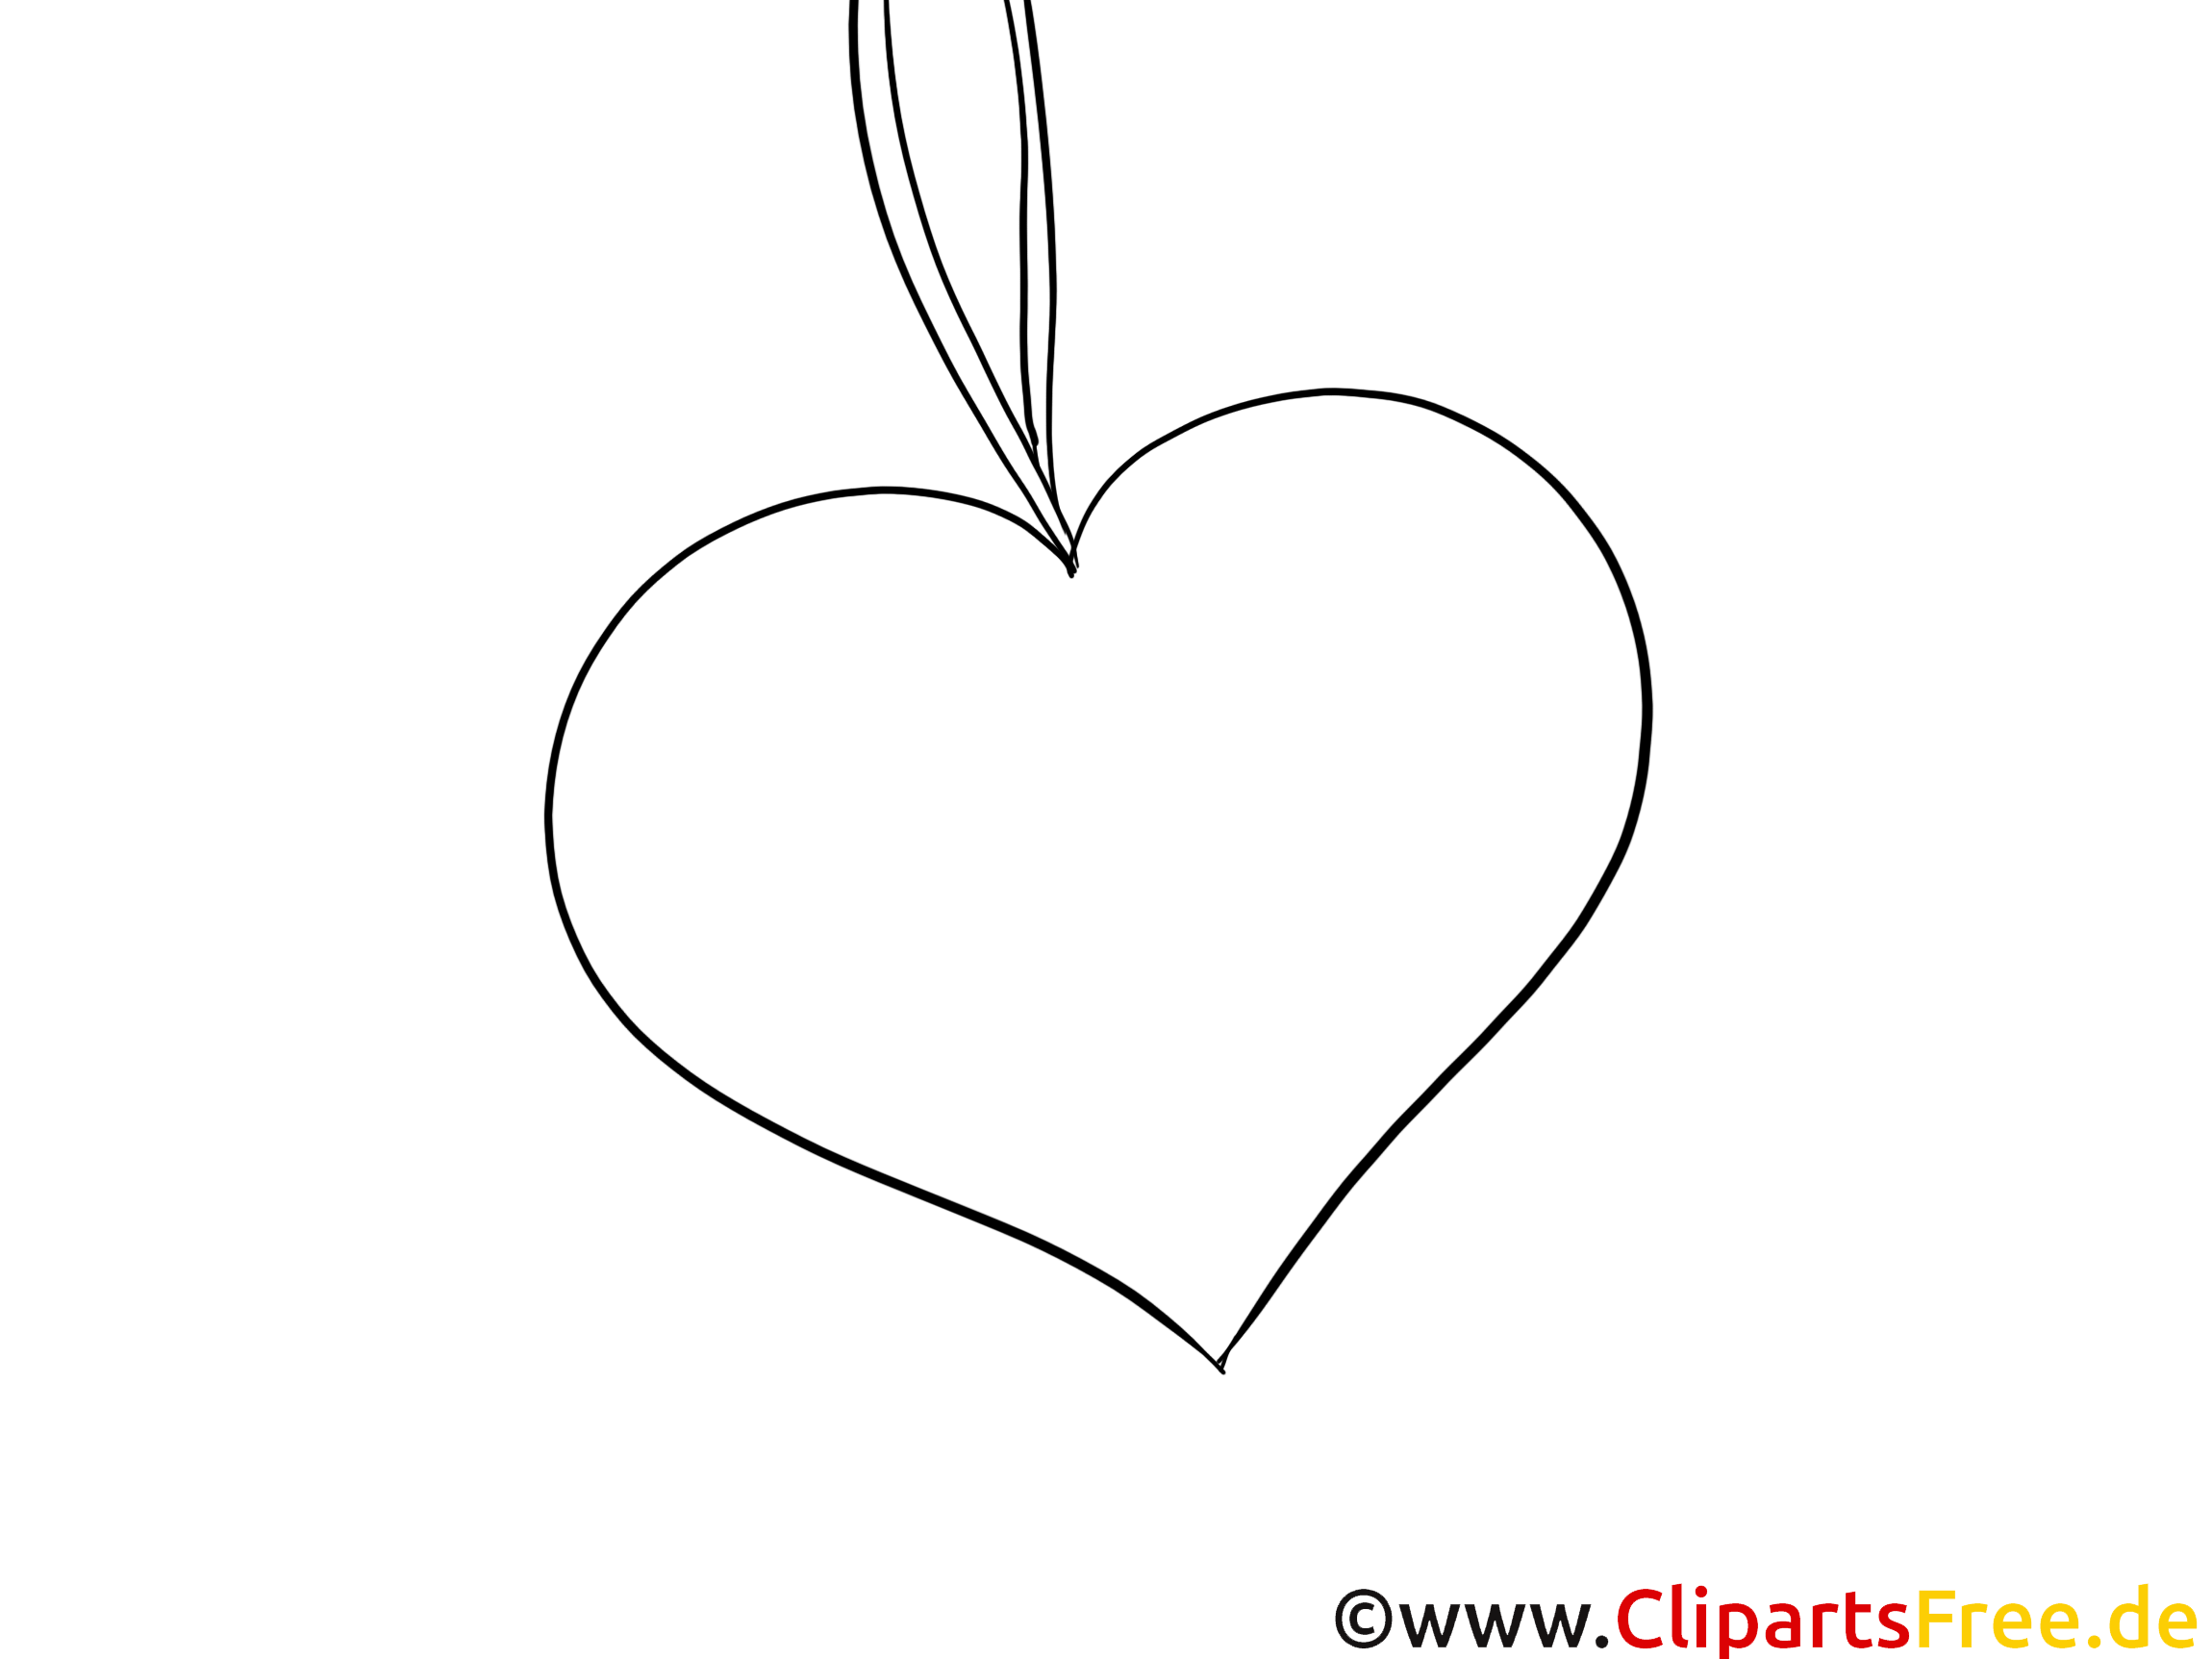 Hjärta målarbild pdf gratis